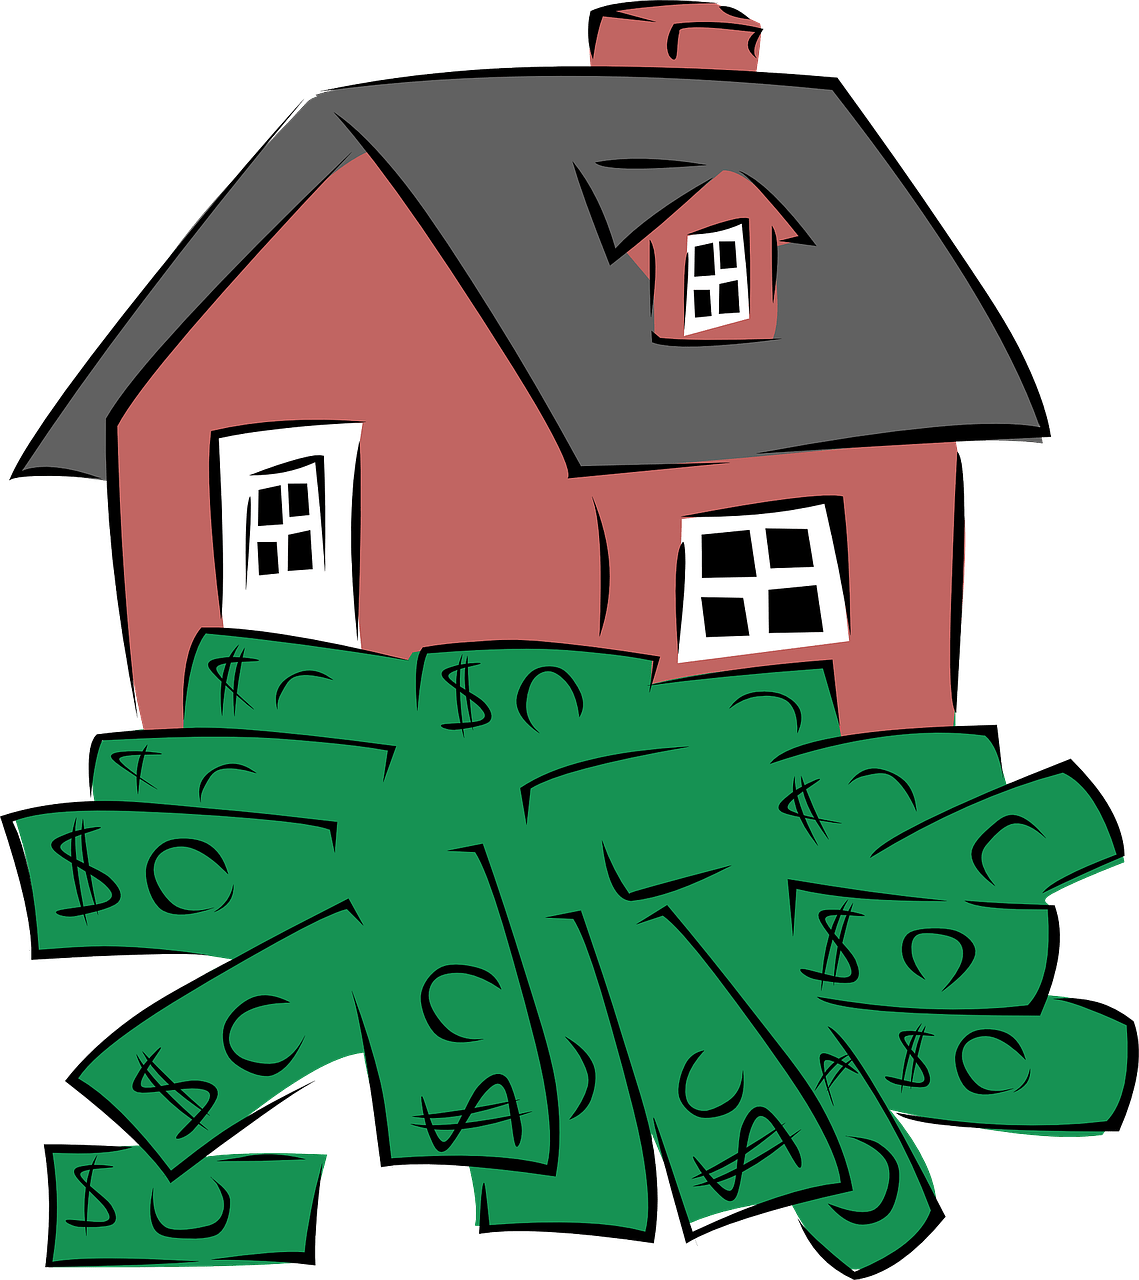 Mutui green, come cambia il mercato finanziario dopo la direttiva europea